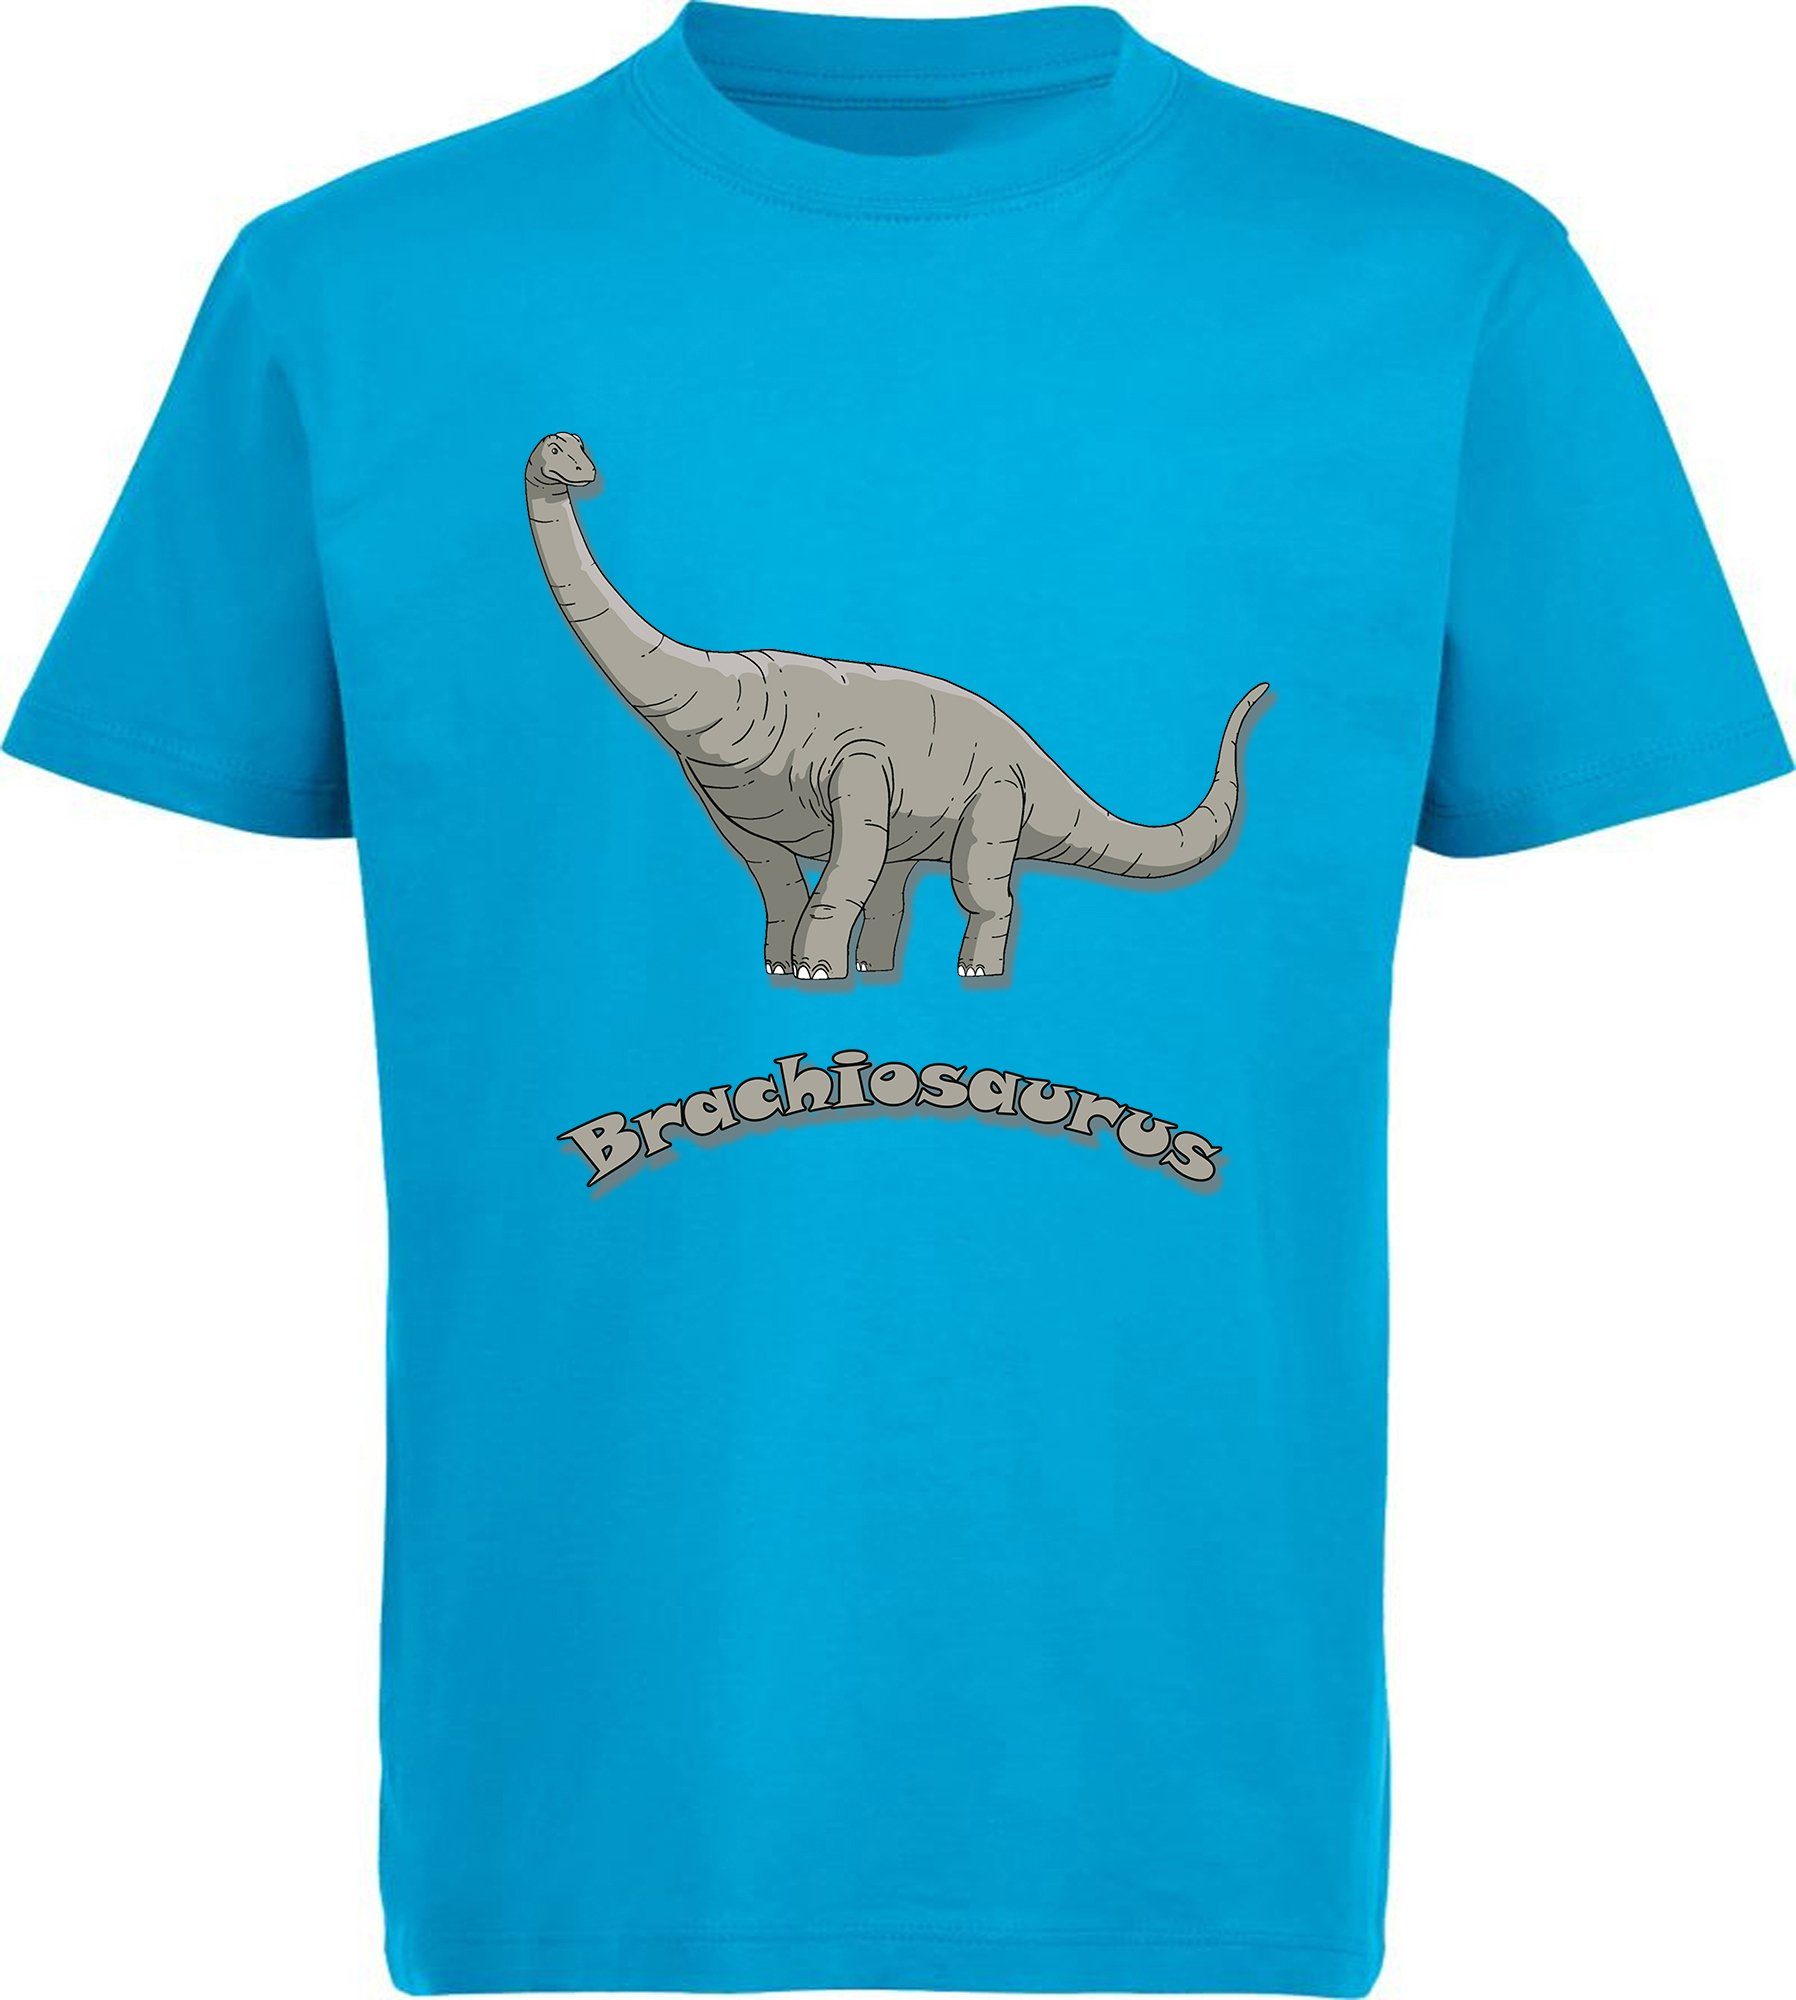 T-Shirt rot, Kinder Baumwollshirt mit blau, blau Dino, MyDesign24 i66 Print-Shirt weiß, mit schwarz, aqua Brachiosaurus bedrucktes